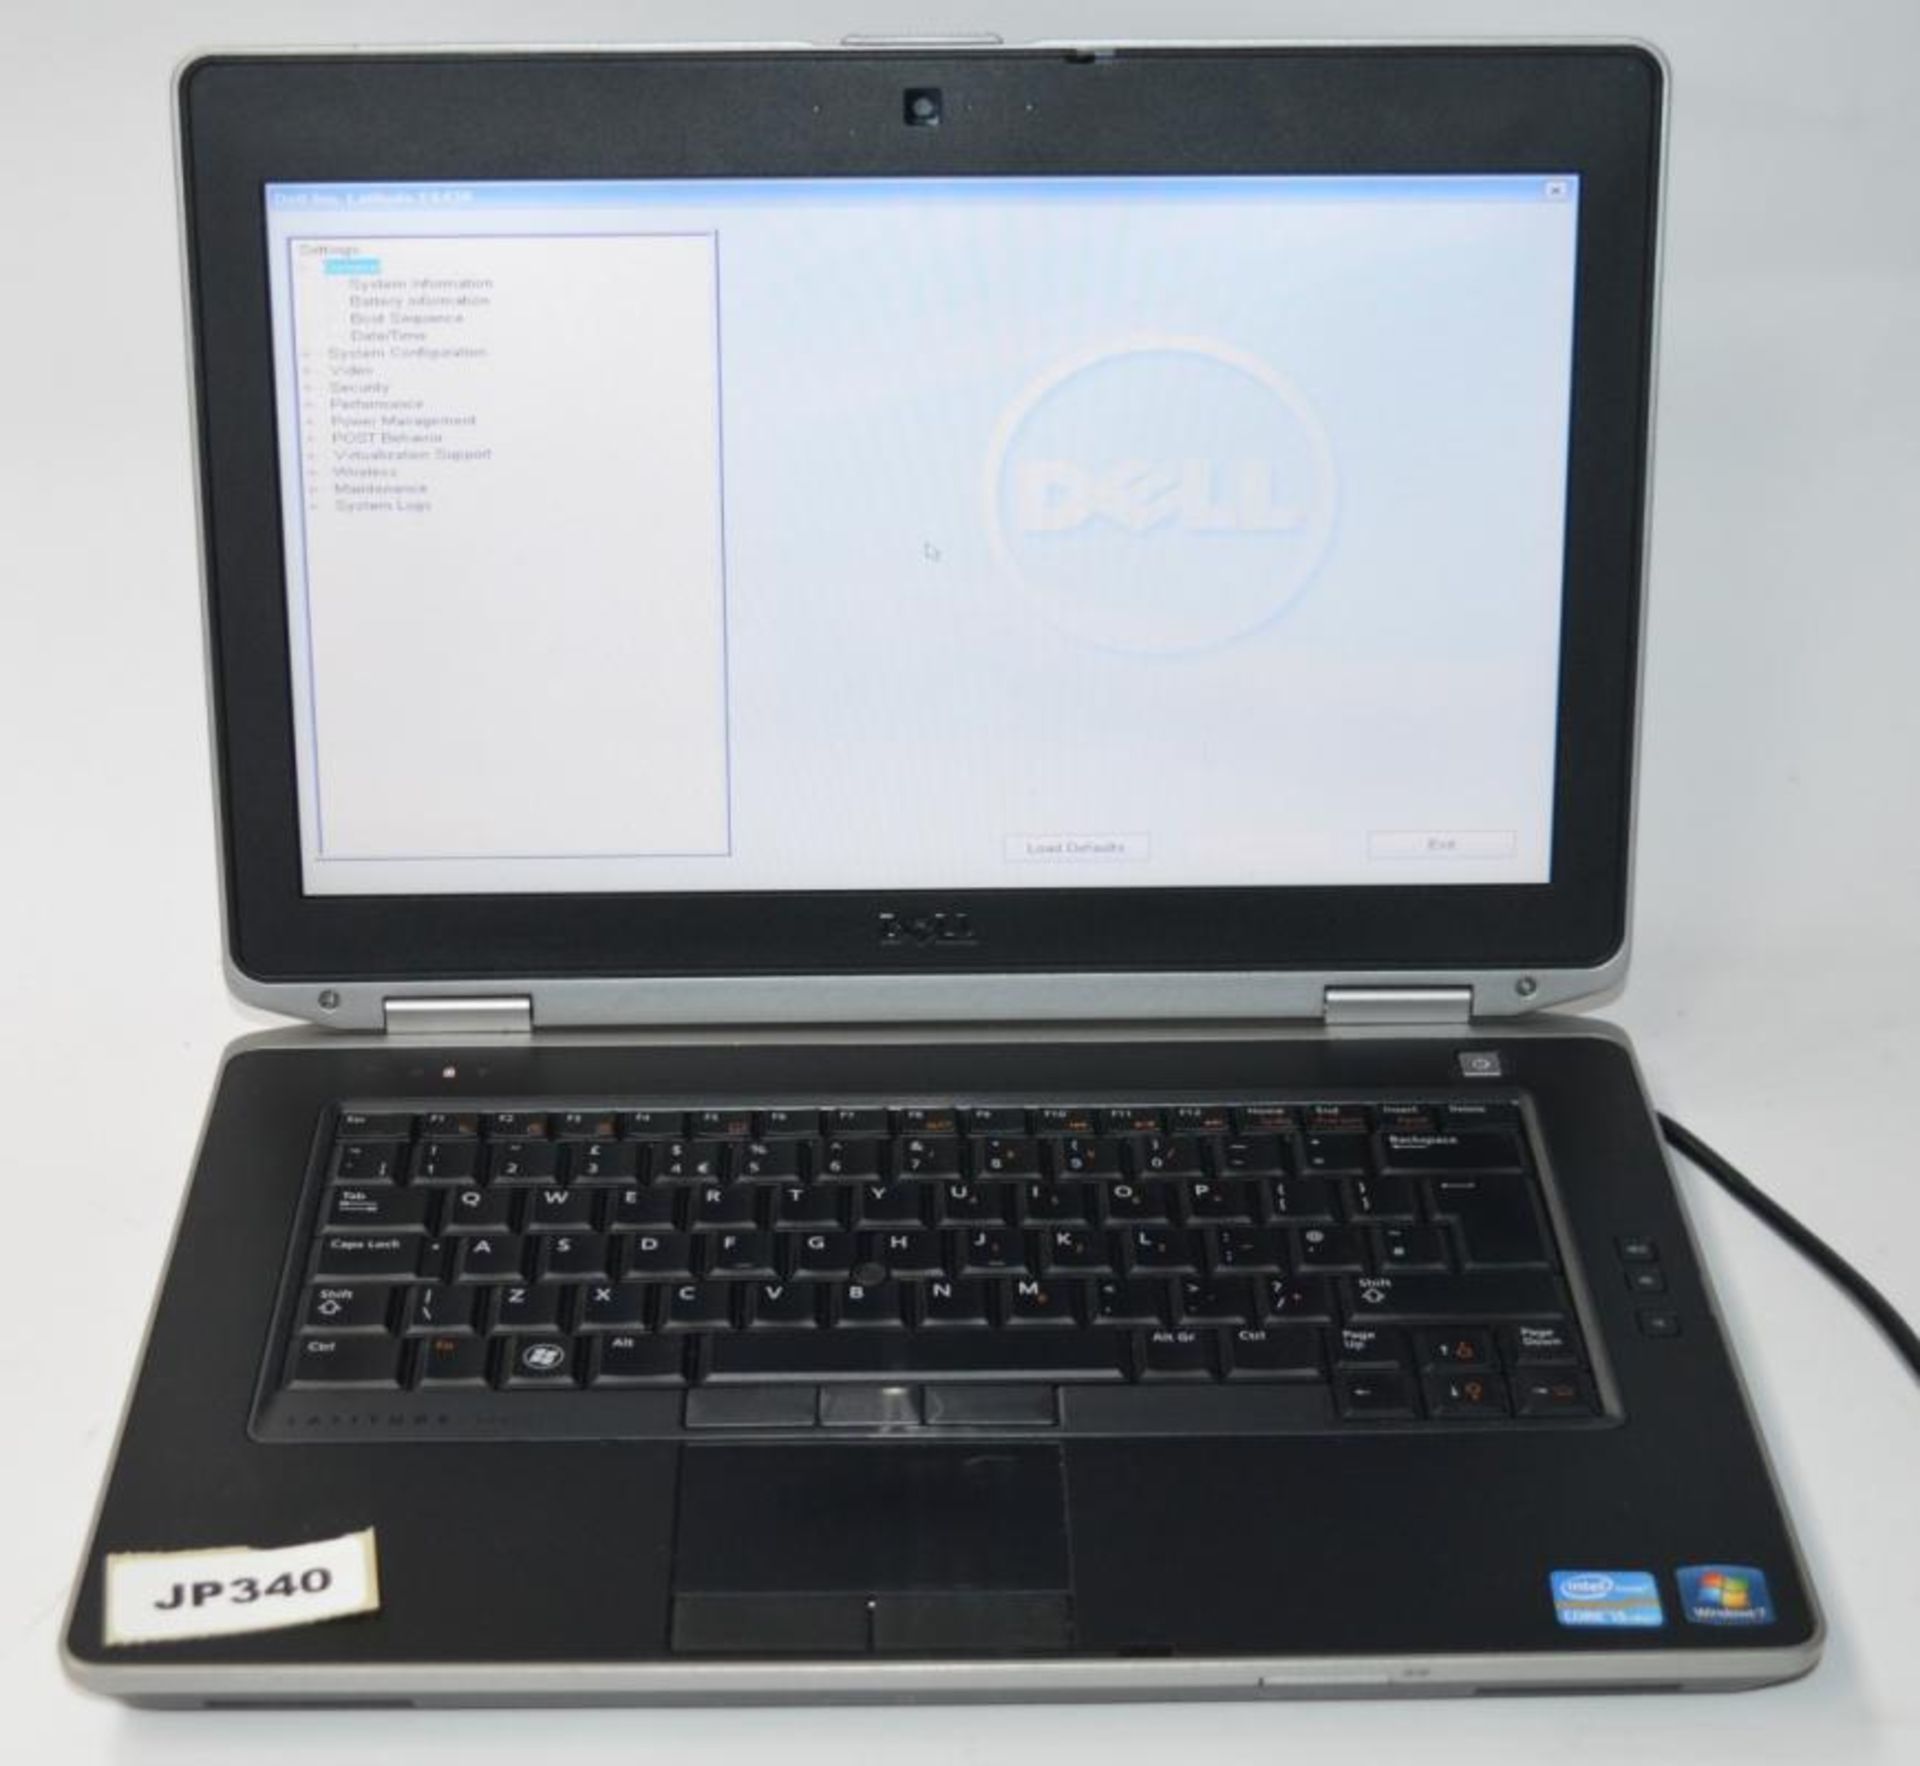 1 x Dell Latitude E6430 Laptop Computer - 14 Inch Screen - Features Intel Core i5 2.6ghz Processor